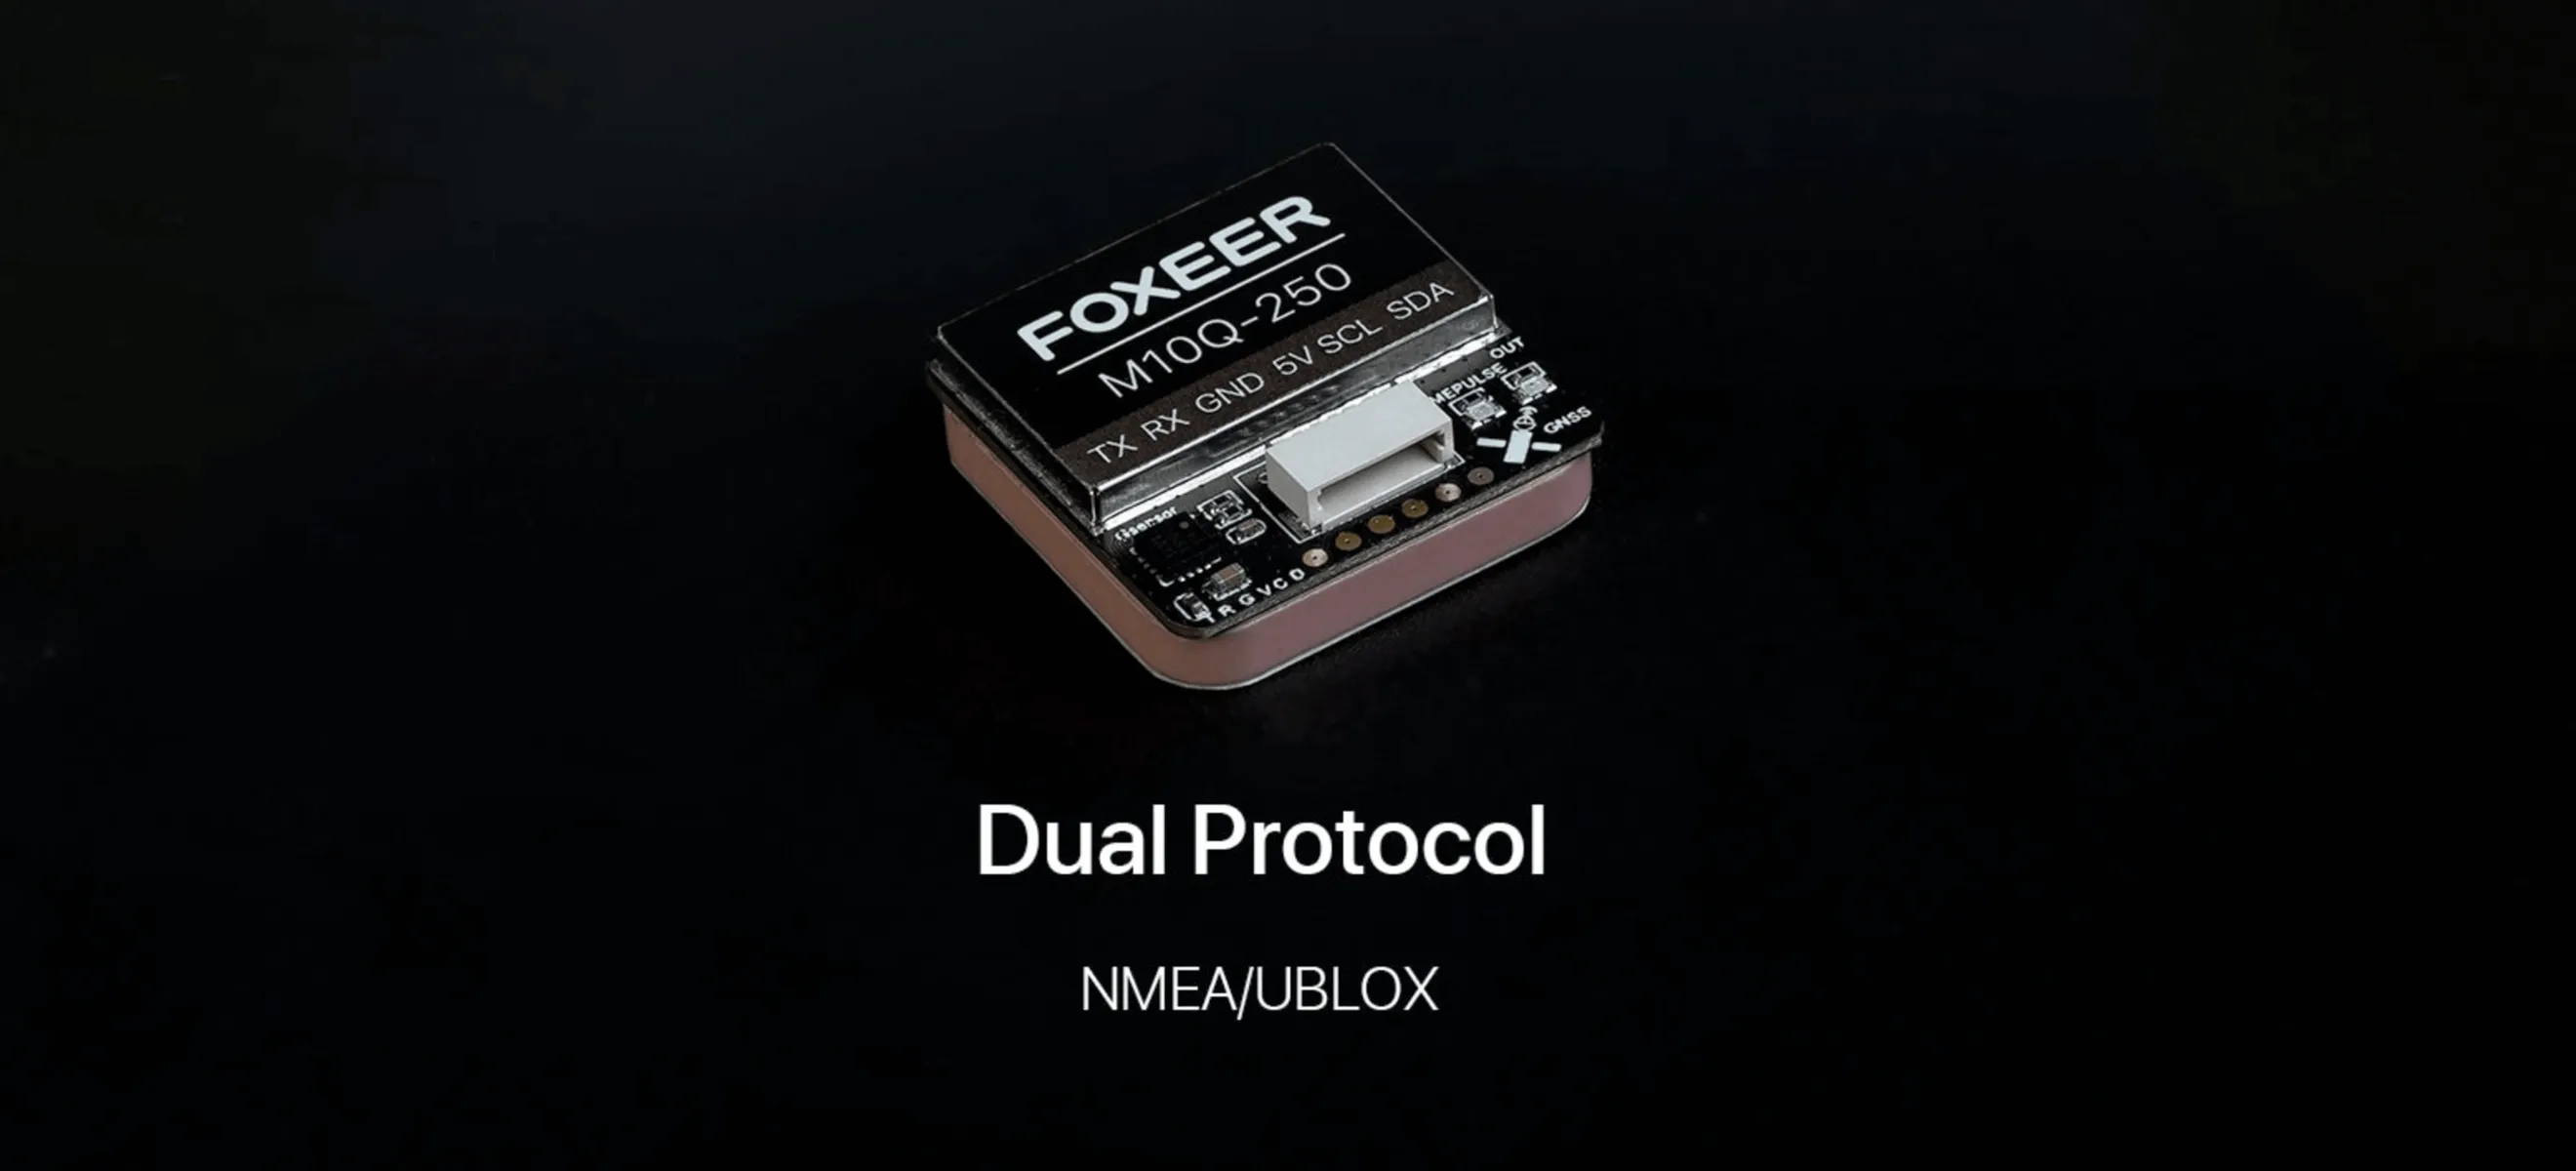 Foxeer m10q 250 gps dual protocol